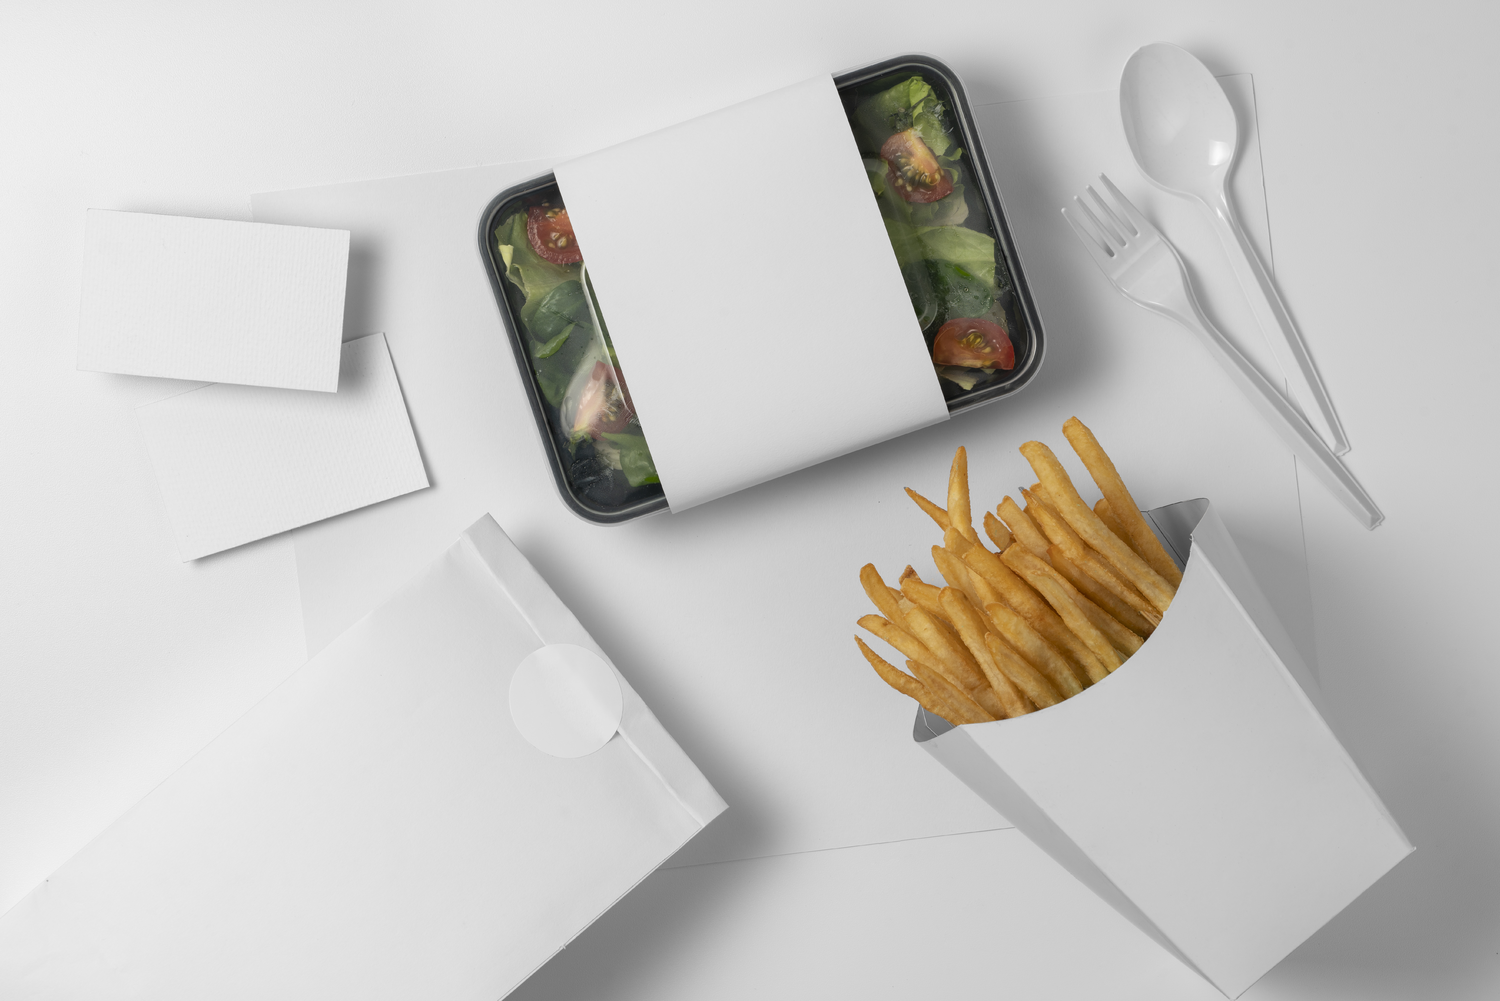 4532 薯条沙拉快餐打包包装袋设计PS样机 Box mock-up design for fast food@GOOODME.COM